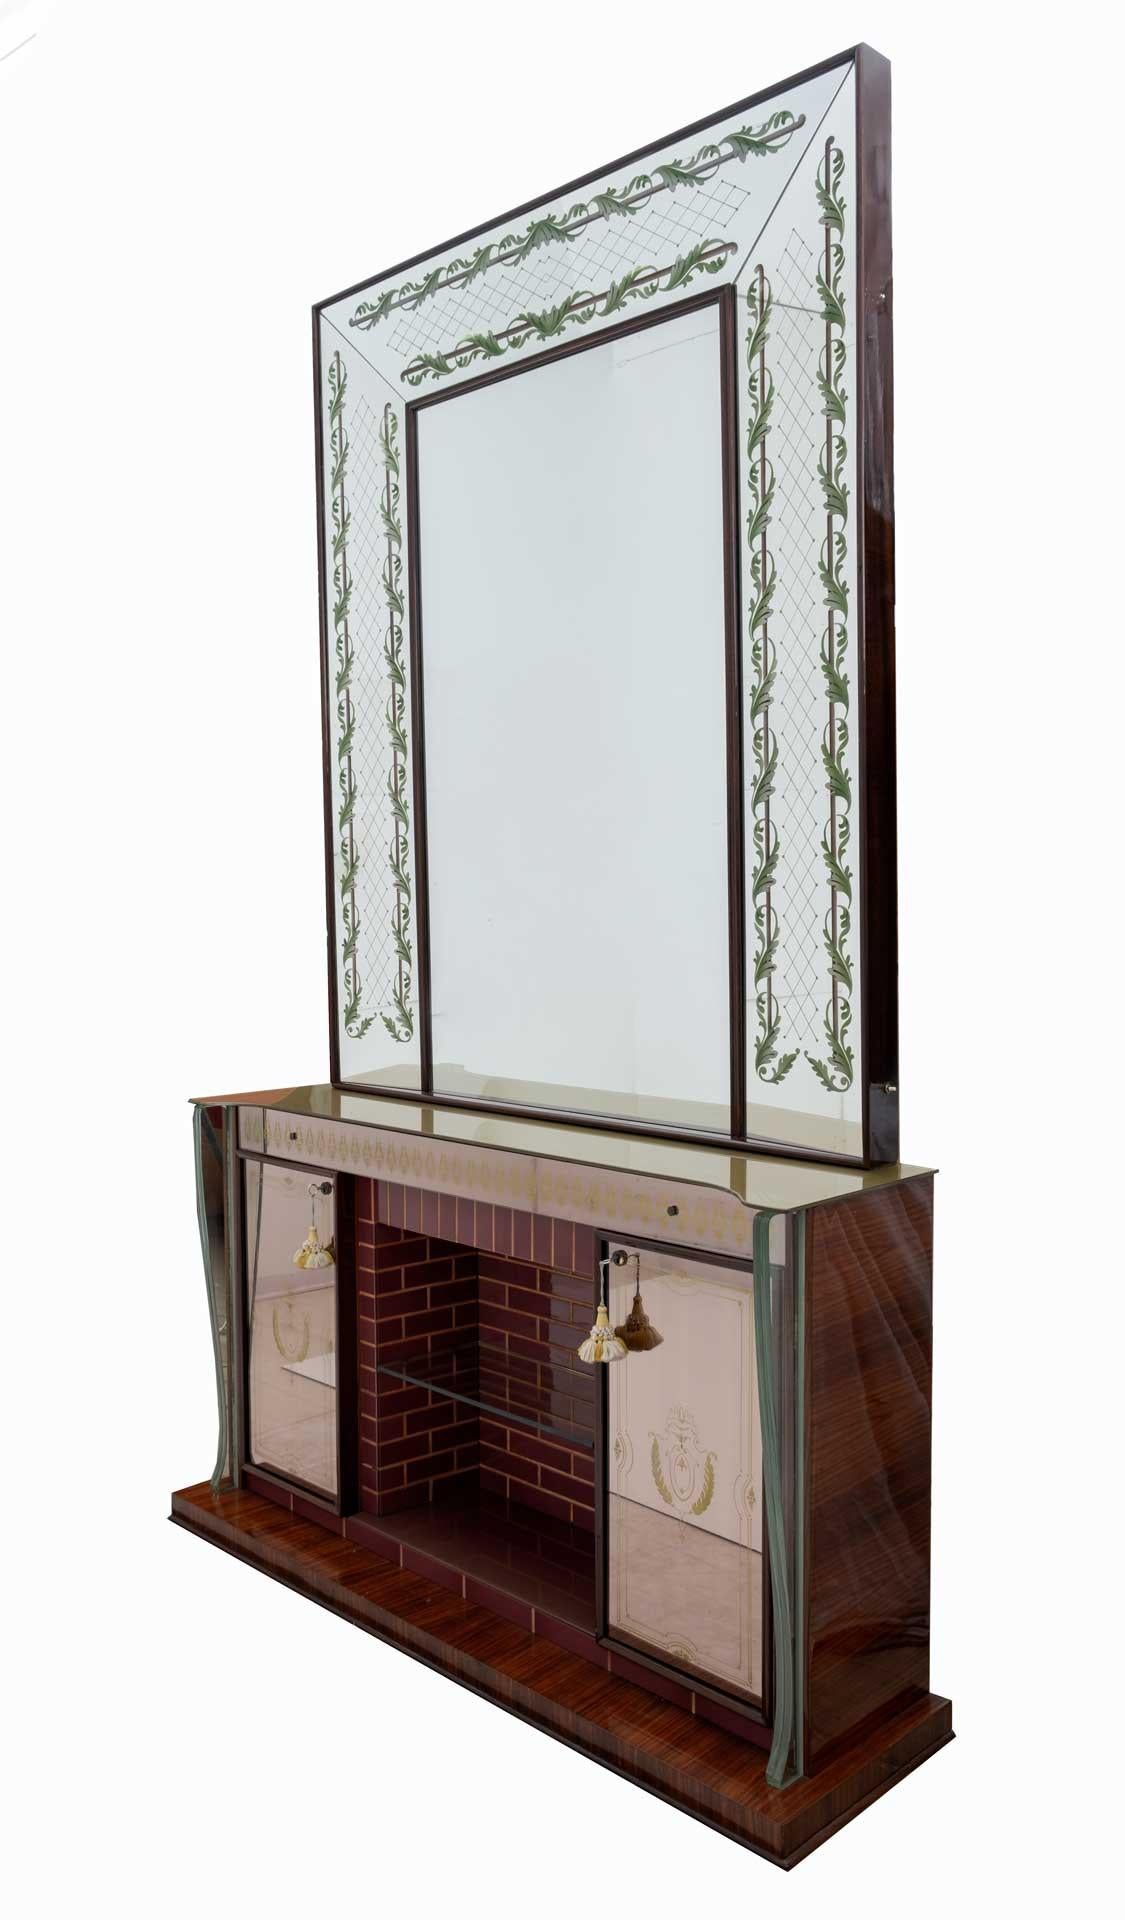 Spektakulärer und seltener Barschrank oder Anrichte mit Spiegel. In den 1940er Jahren von Luigi Brusotti in Italien entworfen. Die Vorderseite ist vollständig mit kostbarem Murano-Glas verkleidet. Die Fliesen sind durch Ahornholzlatten voneinander